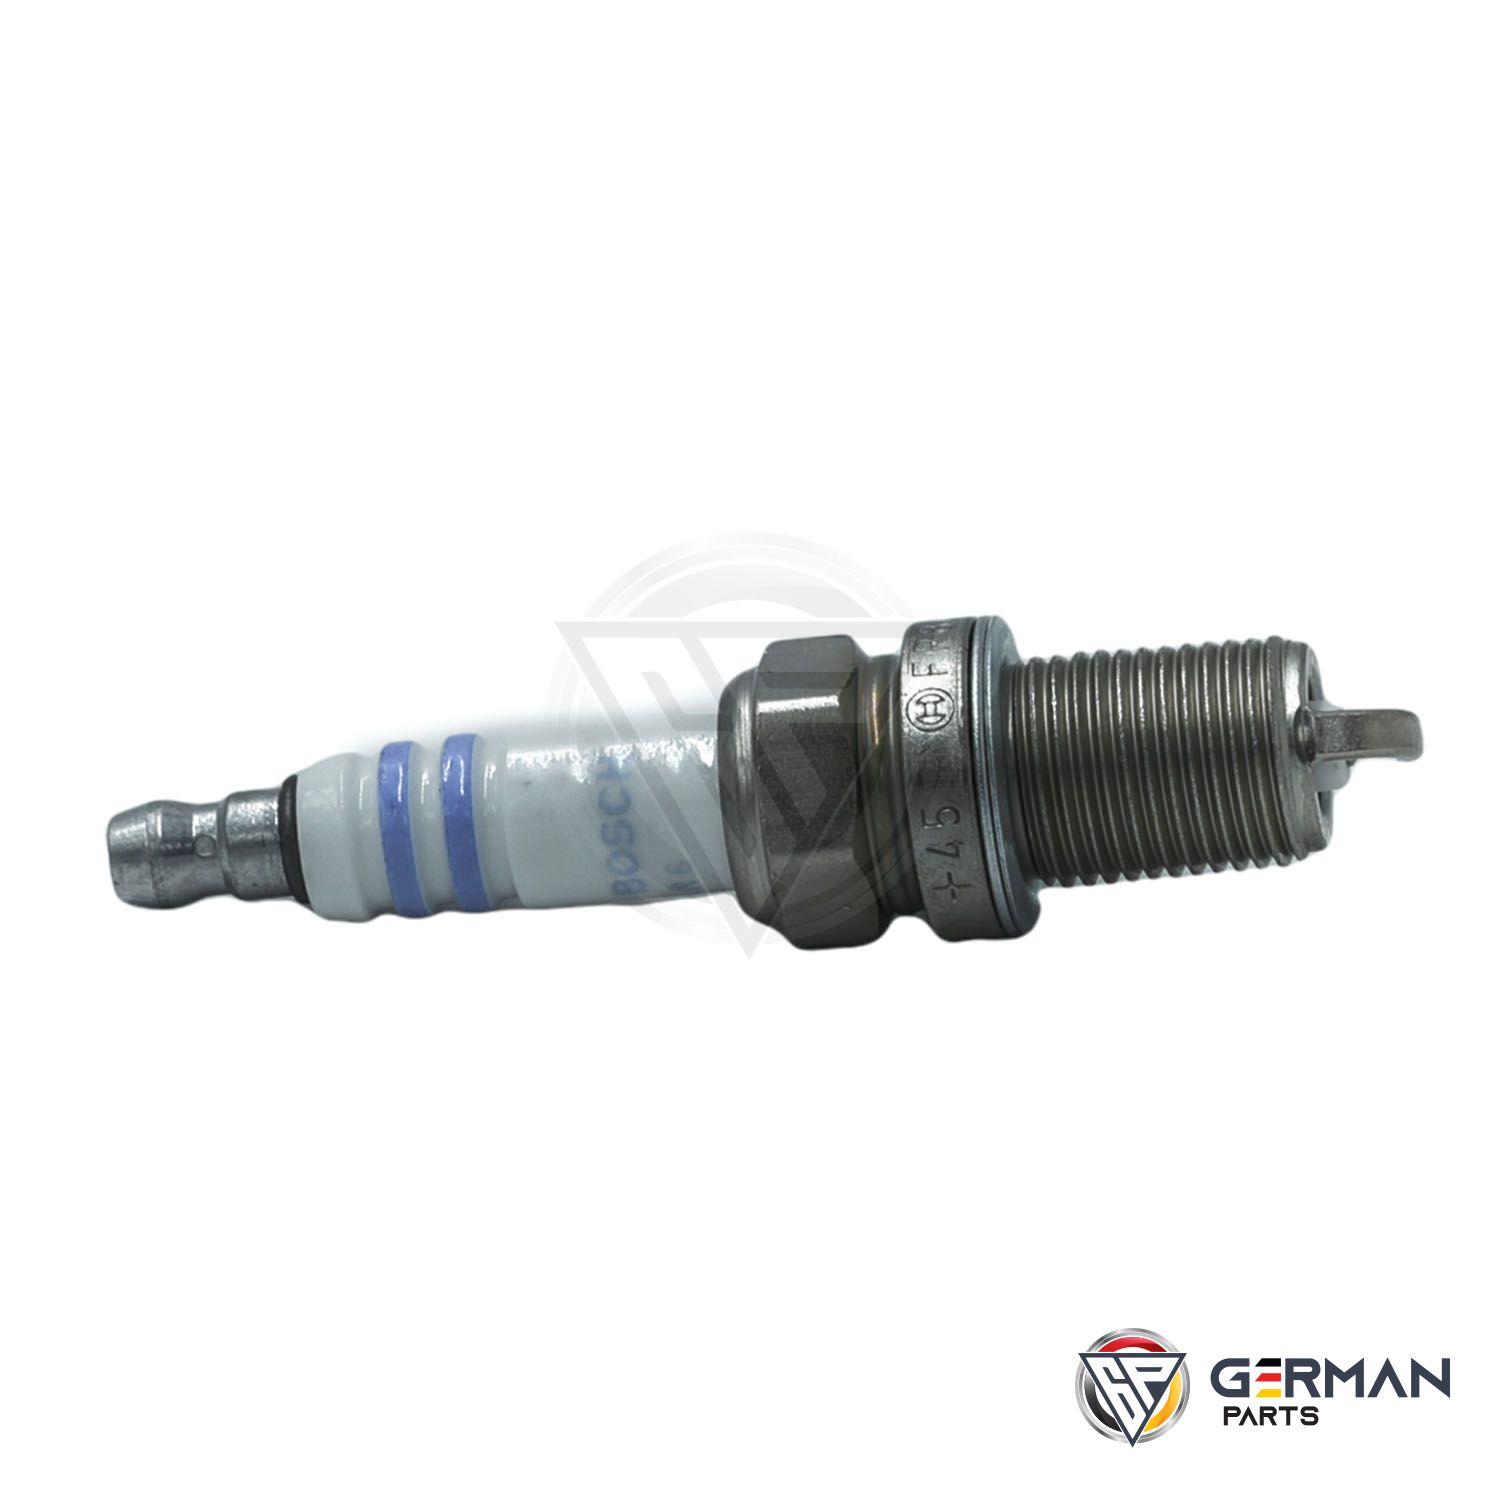 Buy Bosch Spark Plug 0031599403 - German Parts